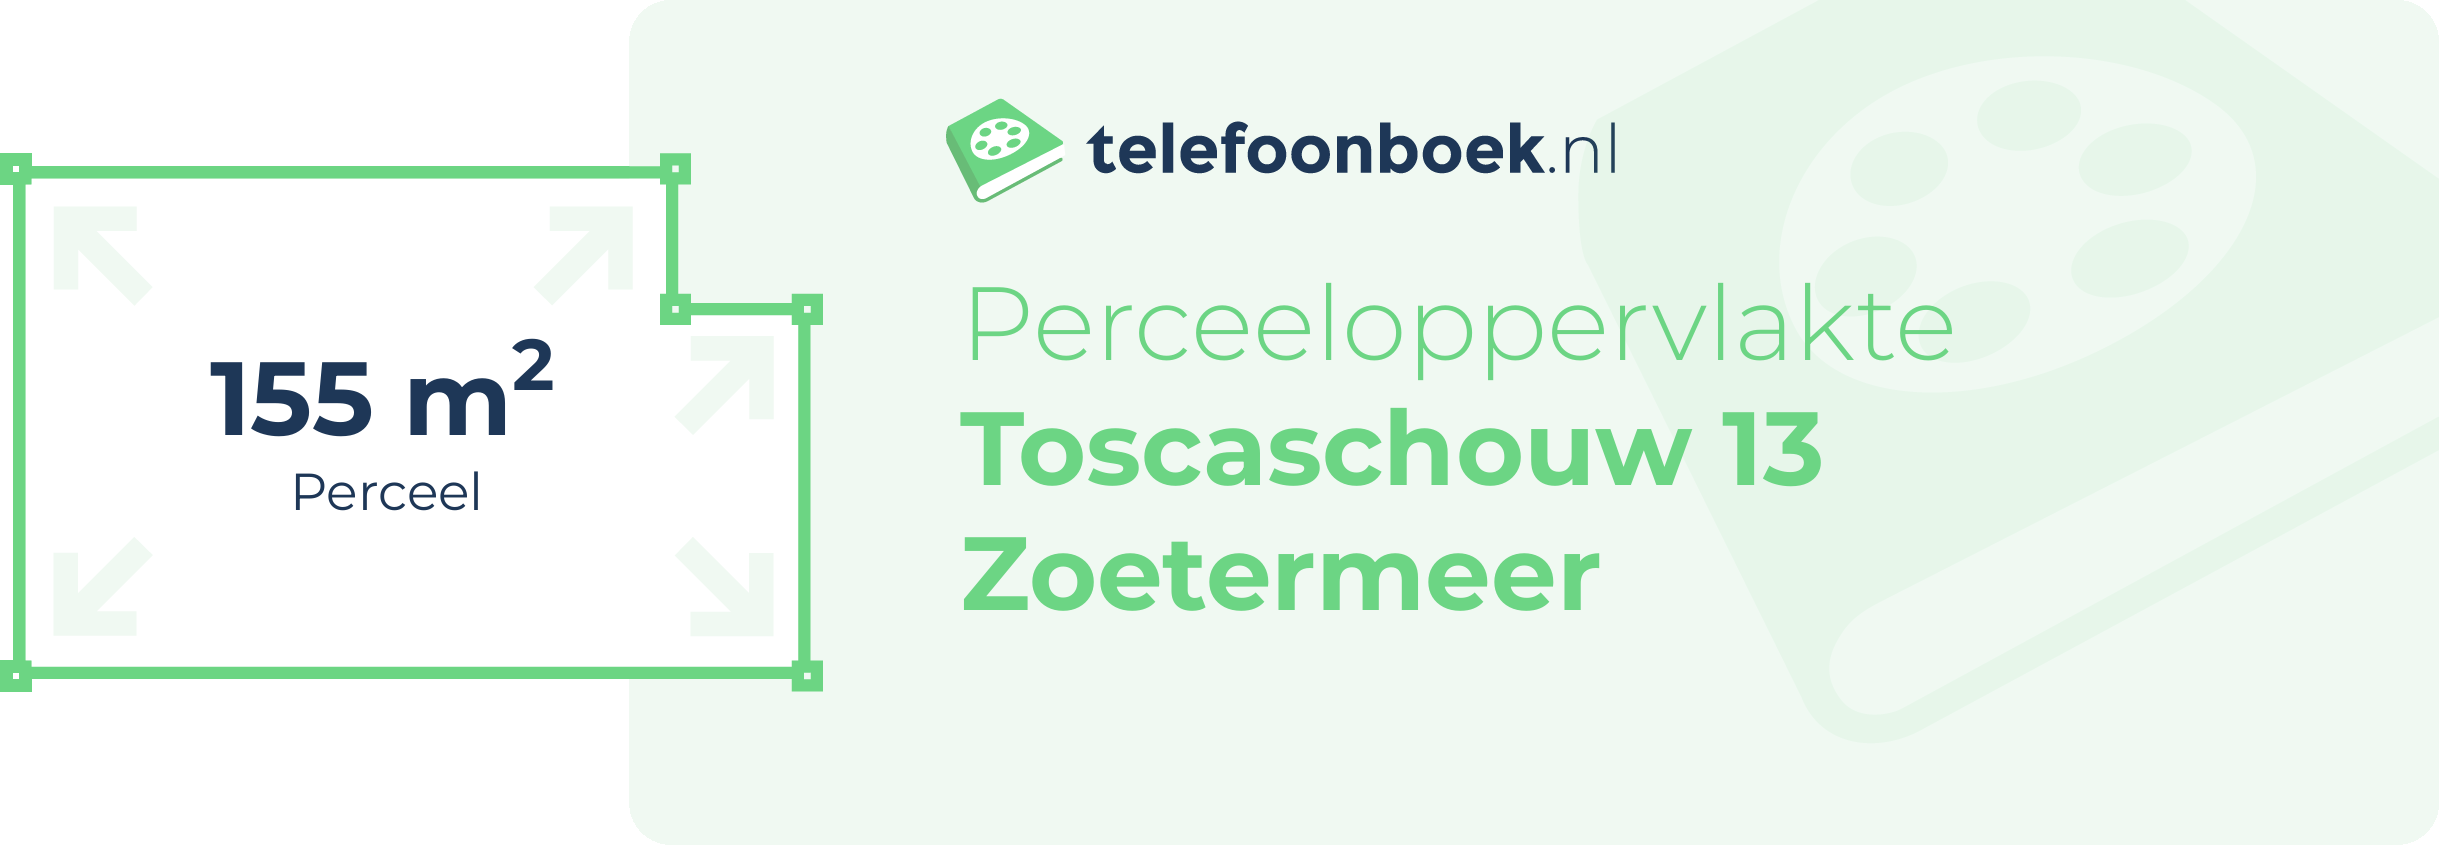 Perceeloppervlakte Toscaschouw 13 Zoetermeer